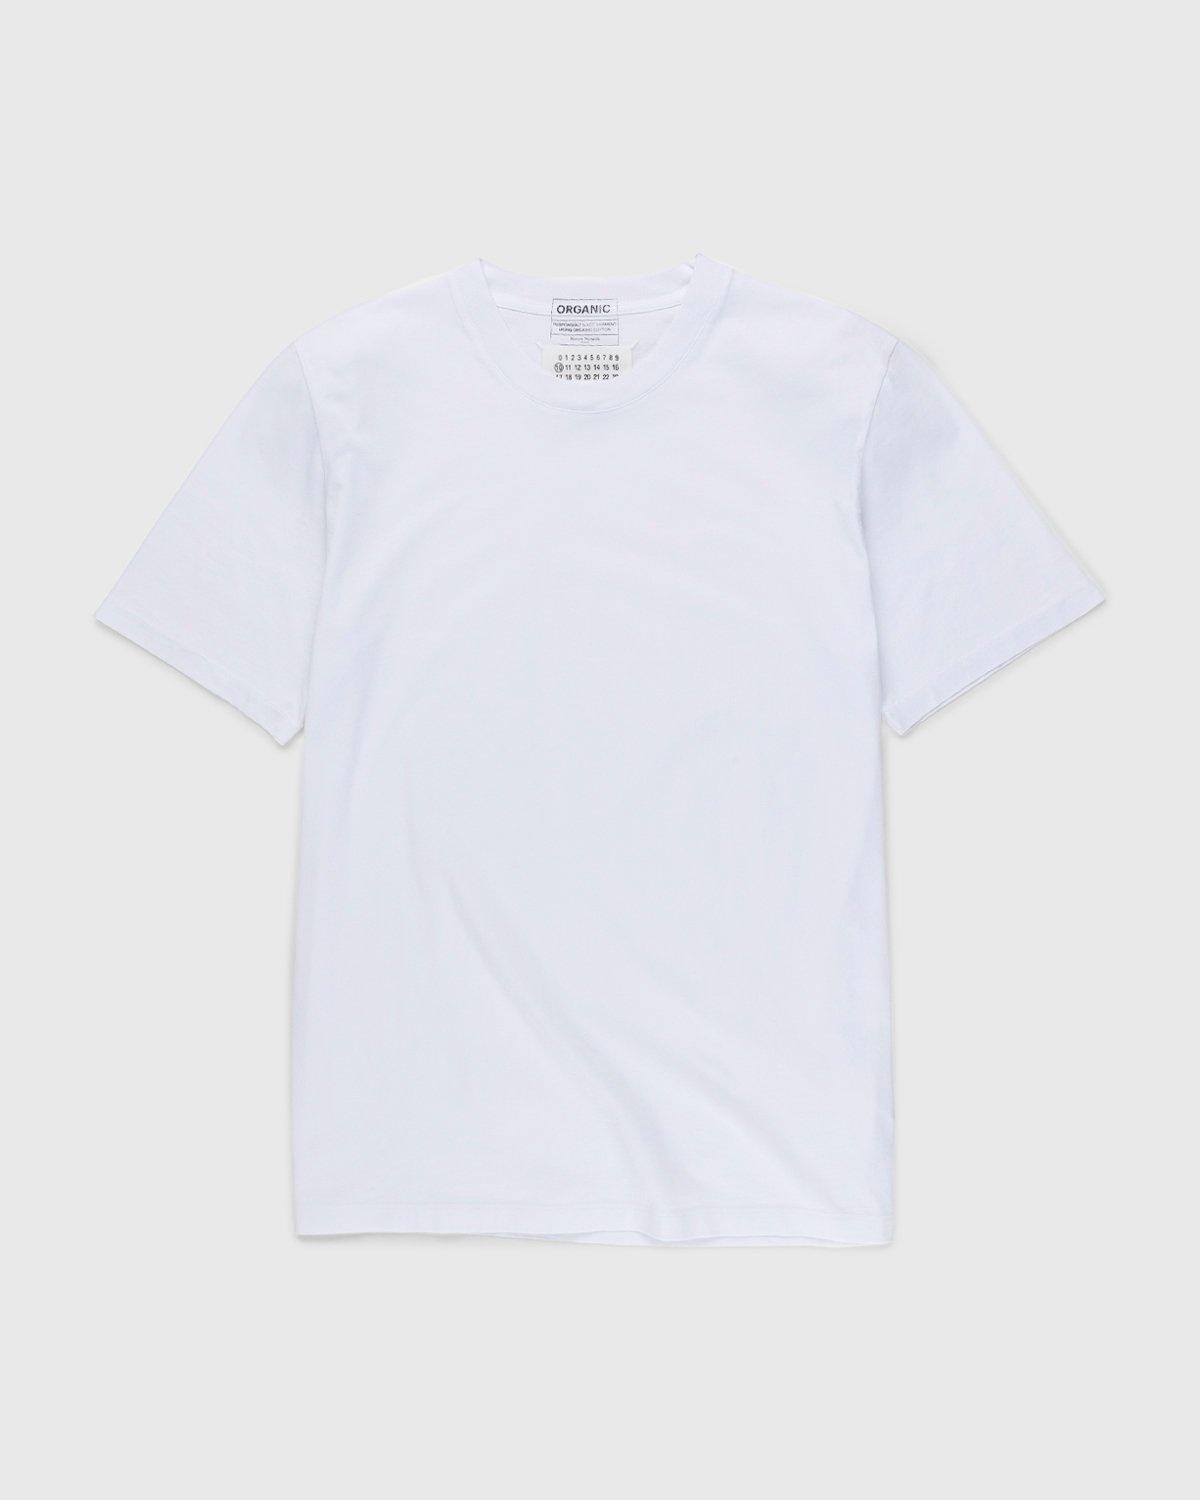 Maison Margiela – Shades of White T-Shirts 3 Pack Multi - T-Shirts - White - Image 2